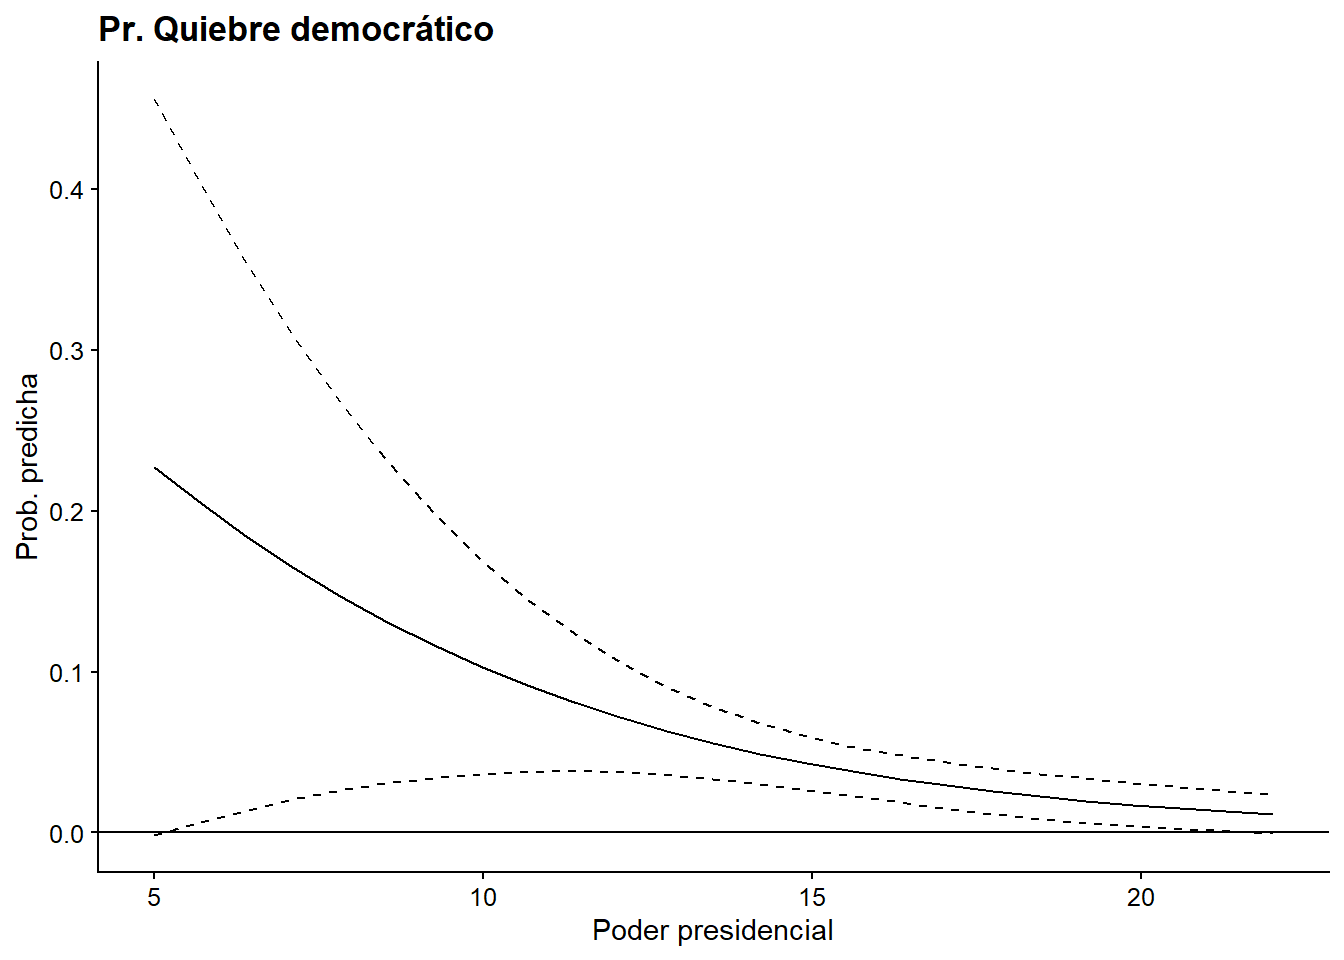  Opción 2. Modelo 2 basado en Mainwaring y Pérez Liñán (2013), probabilidad predicha de una ruptura democrática